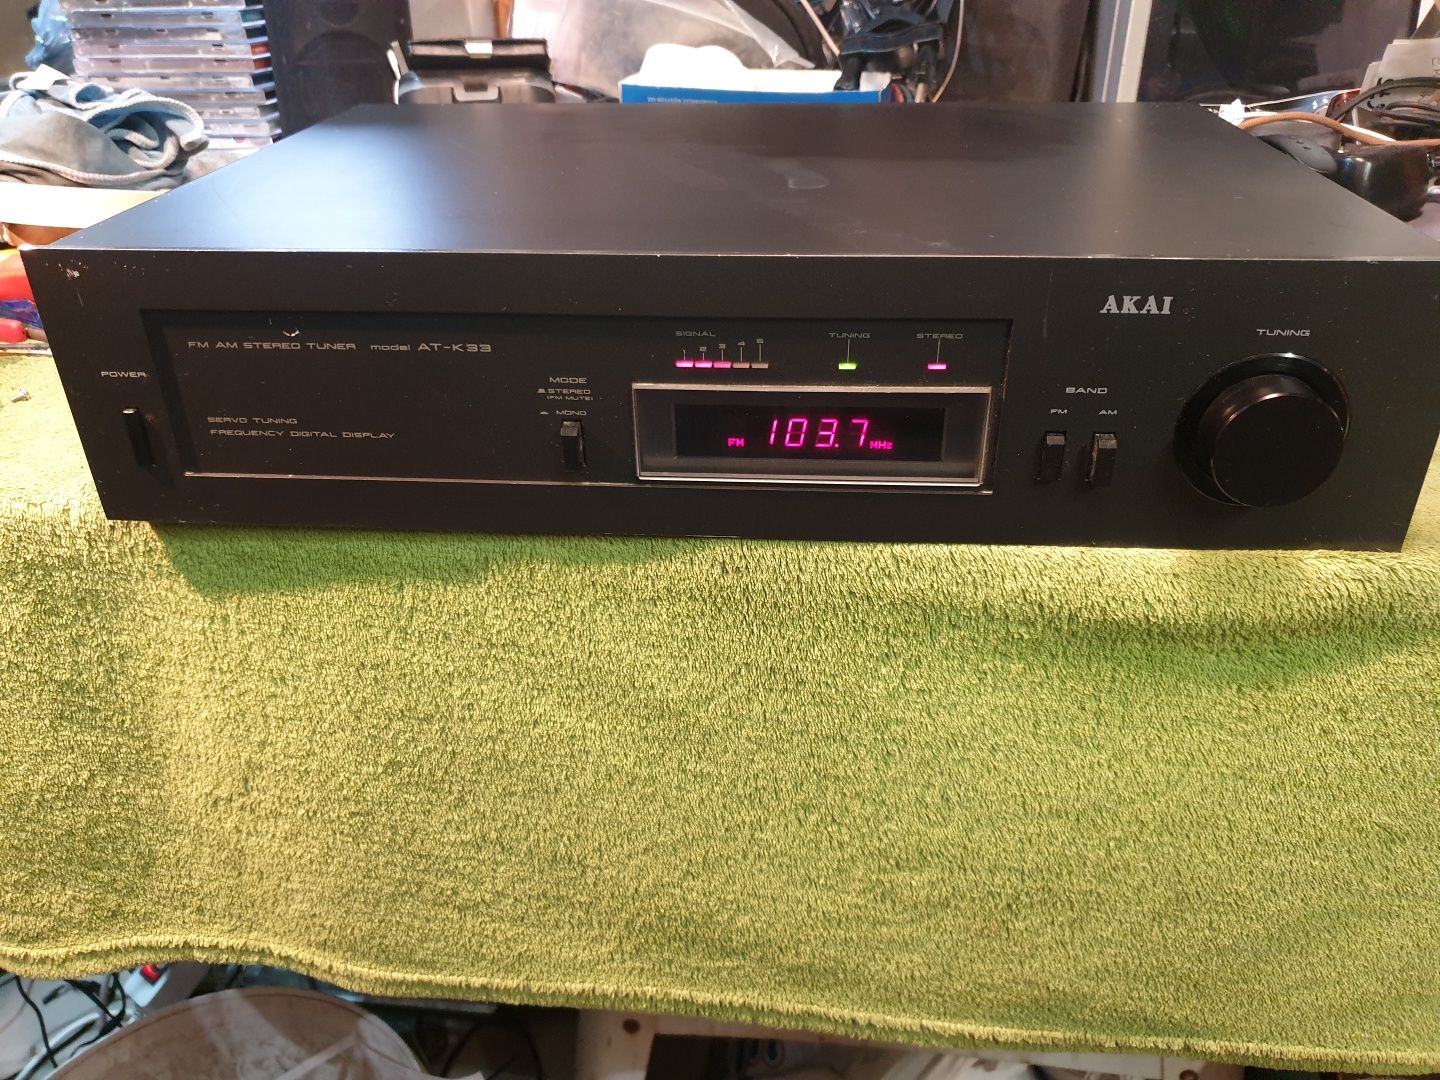 AKAI AT-K33 tuner radiowy stereo z wyświetlaczem cyfrowym.